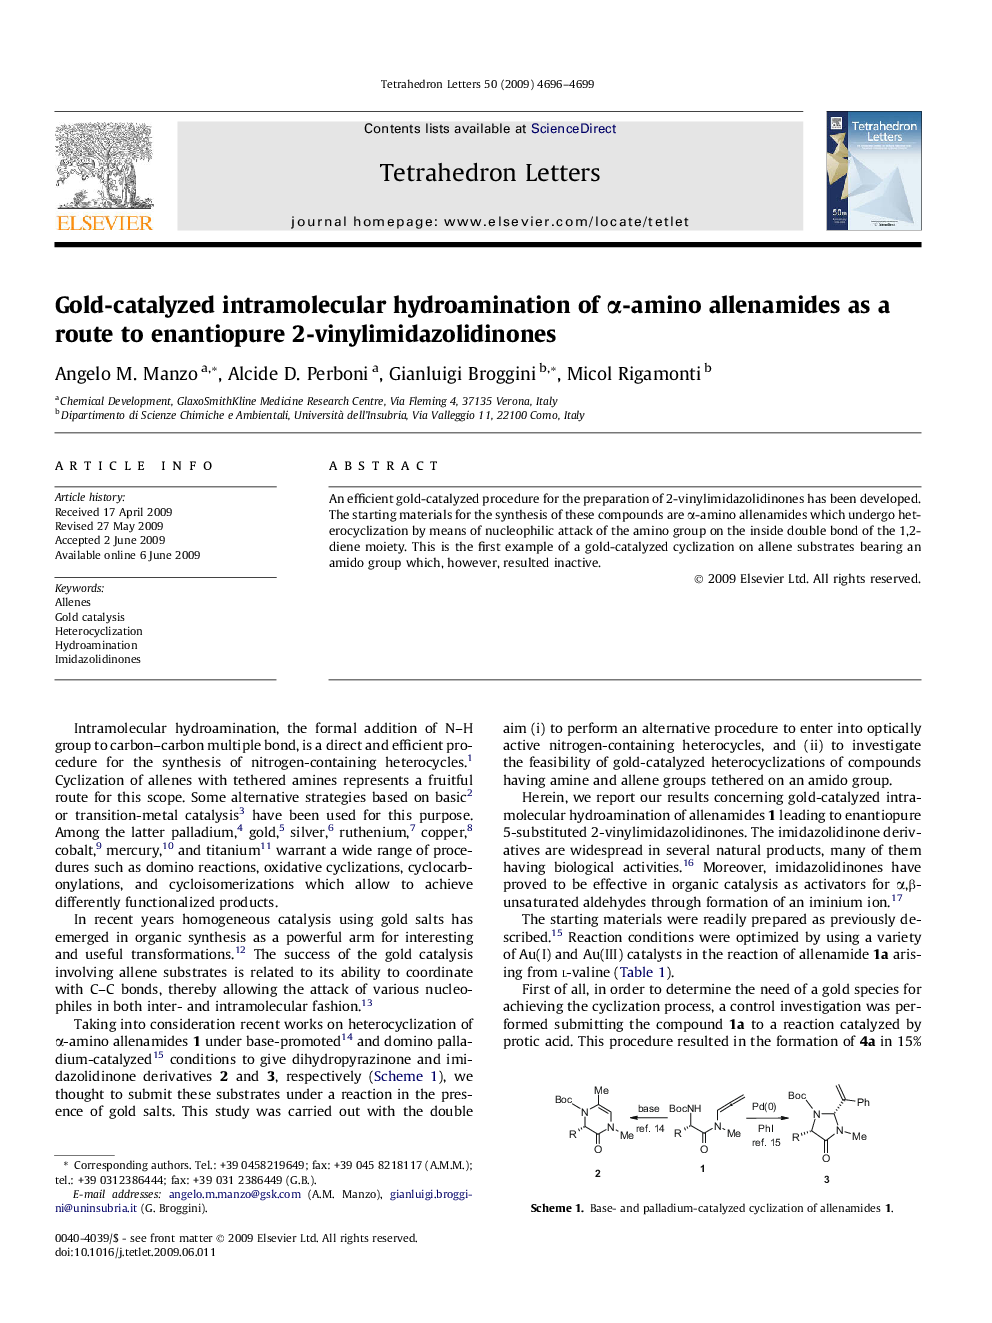 Gold-catalyzed intramolecular hydroamination of Î±-amino allenamides as a route to enantiopure 2-vinylimidazolidinones